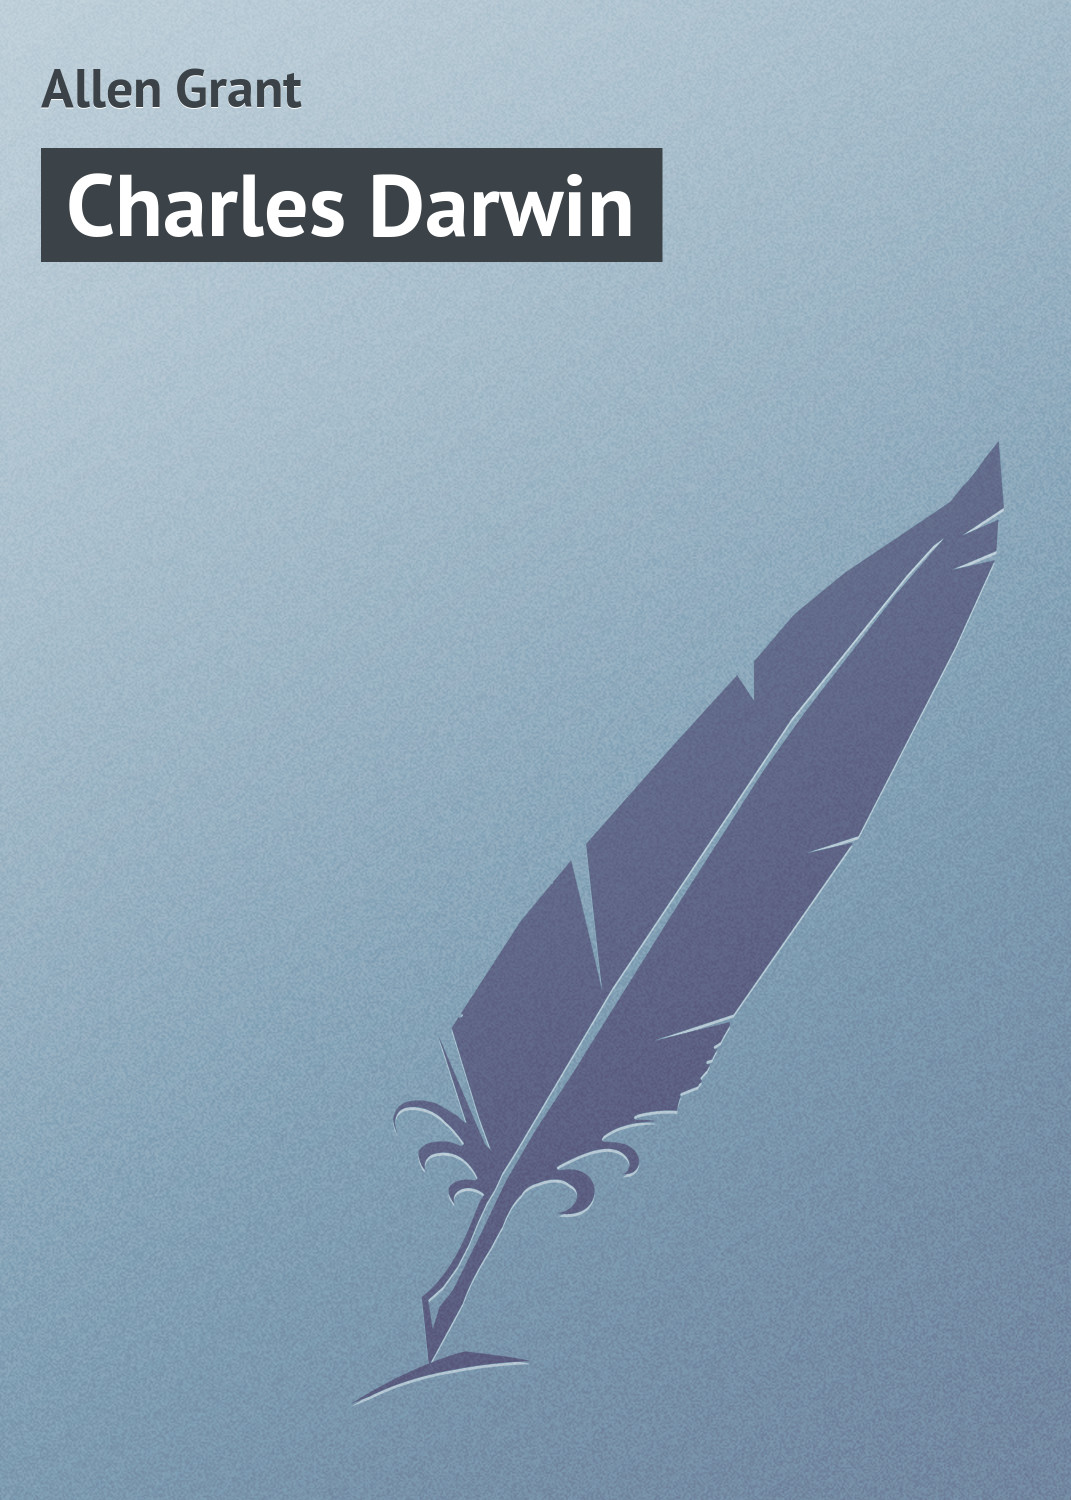 Книга Charles Darwin из серии , созданная Grant Allen, может относится к жанру Зарубежная классика. Стоимость электронной книги Charles Darwin с идентификатором 23160067 составляет 5.99 руб.